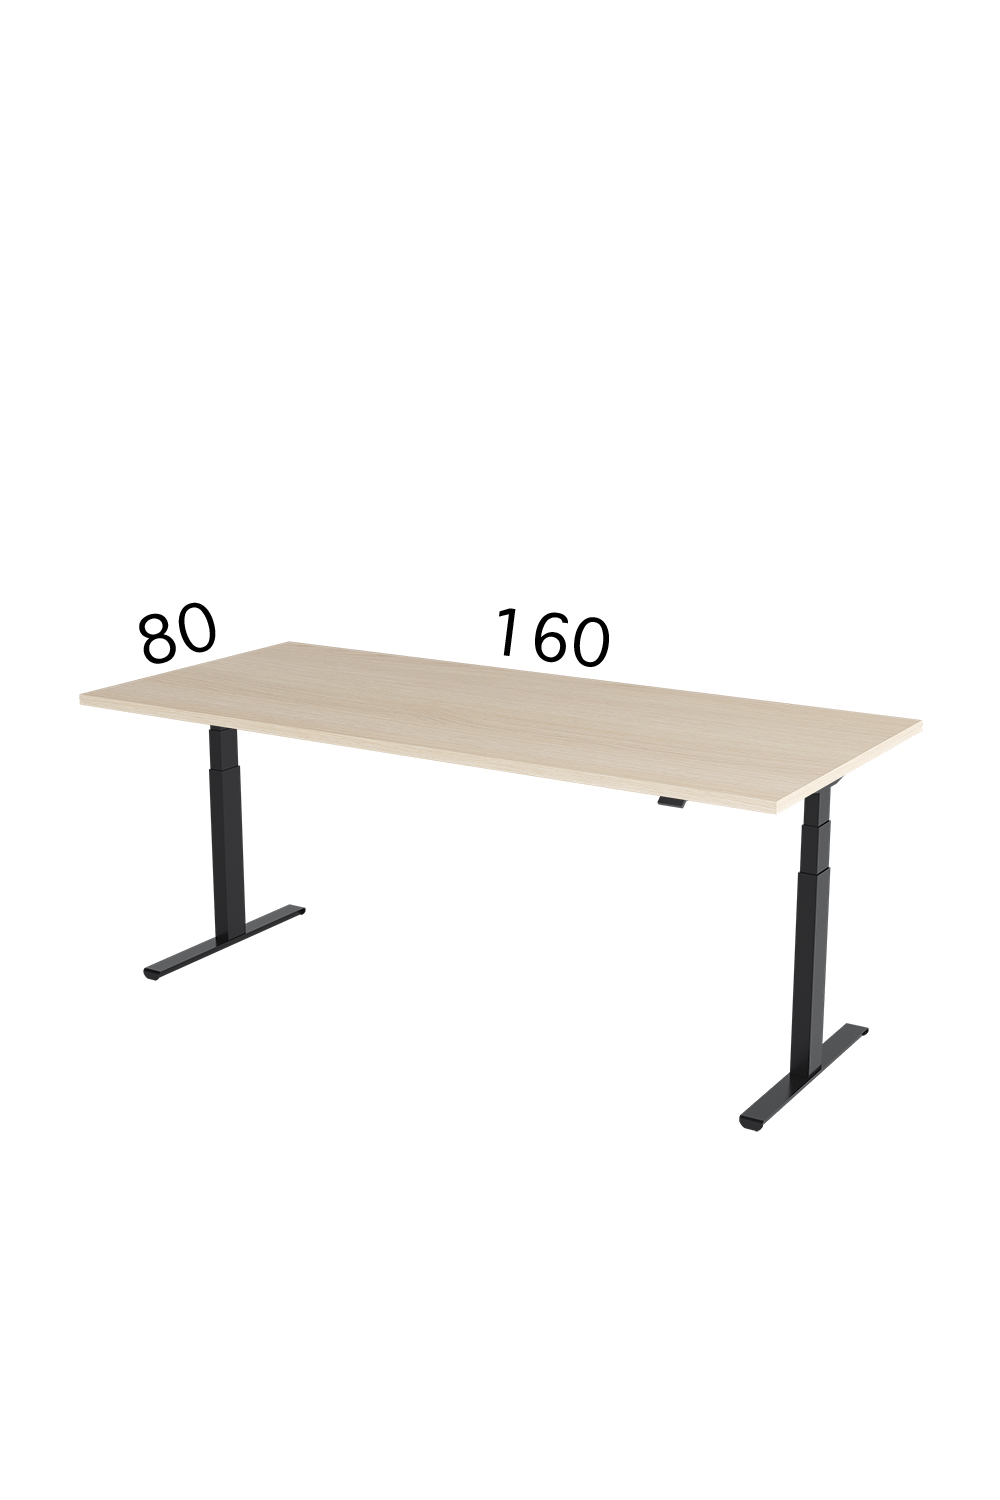 Height adjustable desk, Height-adjustable table, adjustable height desk, adjustable heigth table, adjustable desk, Keičiamo aukščio stalas, reguliuojamas stalas, reguliuojamo aukščio stalai, reguliuojamo aukscio stalas, keičiamo aukscio stalas, reguliuojamo aukscio stalas vilnius, reguliuojamo aukščio stalas Kaunas, reguliuojamo aukščio stalas pirkti internetu, reguliuojamo aukščio stalas pirkti, reguliuojamo aukščio stalas pirkti internetu Vilnius, reguliuojamo aukscio stalai pirkti, tvirtas reguliuojamo aukscio stalas, pakeliamas stalas, kilnojamas stalas, pakeliami stalai, pakeliamas stalas pirkti, pakeliamas stalas internetu, pakeliamas stalas pirkti internetu, pakeliamas stalas pirkti Vilnius, pakeliamas stalas Vilnius, pakeliamas stalas Kaunas, pakwliamas stalas Klaipeda, pakeliamas stalas pirkti internetu Vilnius, pakeliami stalai pirkti internetu, pakeliami stalai internetu Kaunas, reguliuojamo aukscio stalai, pakeliamas stalas, pakeliami stalai, Reguliuojamo aukščio stalas, reguliuojami stalai, reguliuojamas stalas vilnius, reguliuojamas stalas internetu, reguliuojami stalai vilnius, reguliuojami stalai internetu, reguliuojami stalai internetu pirkti, reguliuojamas stalas internetu pirkti, reguliuojamas stalas pirkti, reguliuojami stalai pirkti, reguliuojamas stalas, pakeliami stalai, pakeliamas stalas, reguliuojamo aukscio stalai, Reguliuojamo aukščio stalas, reguliuojami stalai, vildika katalogas, darbo stalų gamyba, vildika stalai, pakeliamas stalas, reguliuojamo aukščio stalas skelbiu, reguliuojamo aukščio stalas vaikamselektra valdomas stalas, stok sėsk, aktyvi darbo vieta, augantis stalas, kintančio aukščio stalas, 5 metų garantija, aukščiausia kokybė, pakeliami stalai,stacionarus stalas, ergonominis stalas, eggonominiai stalai, reguliuojamo aukščio mechanizmas, stalai su pakeliamu mechanizmu, elektrinis stalas, elektra pakeliami stalai, ergonomiski stalai,